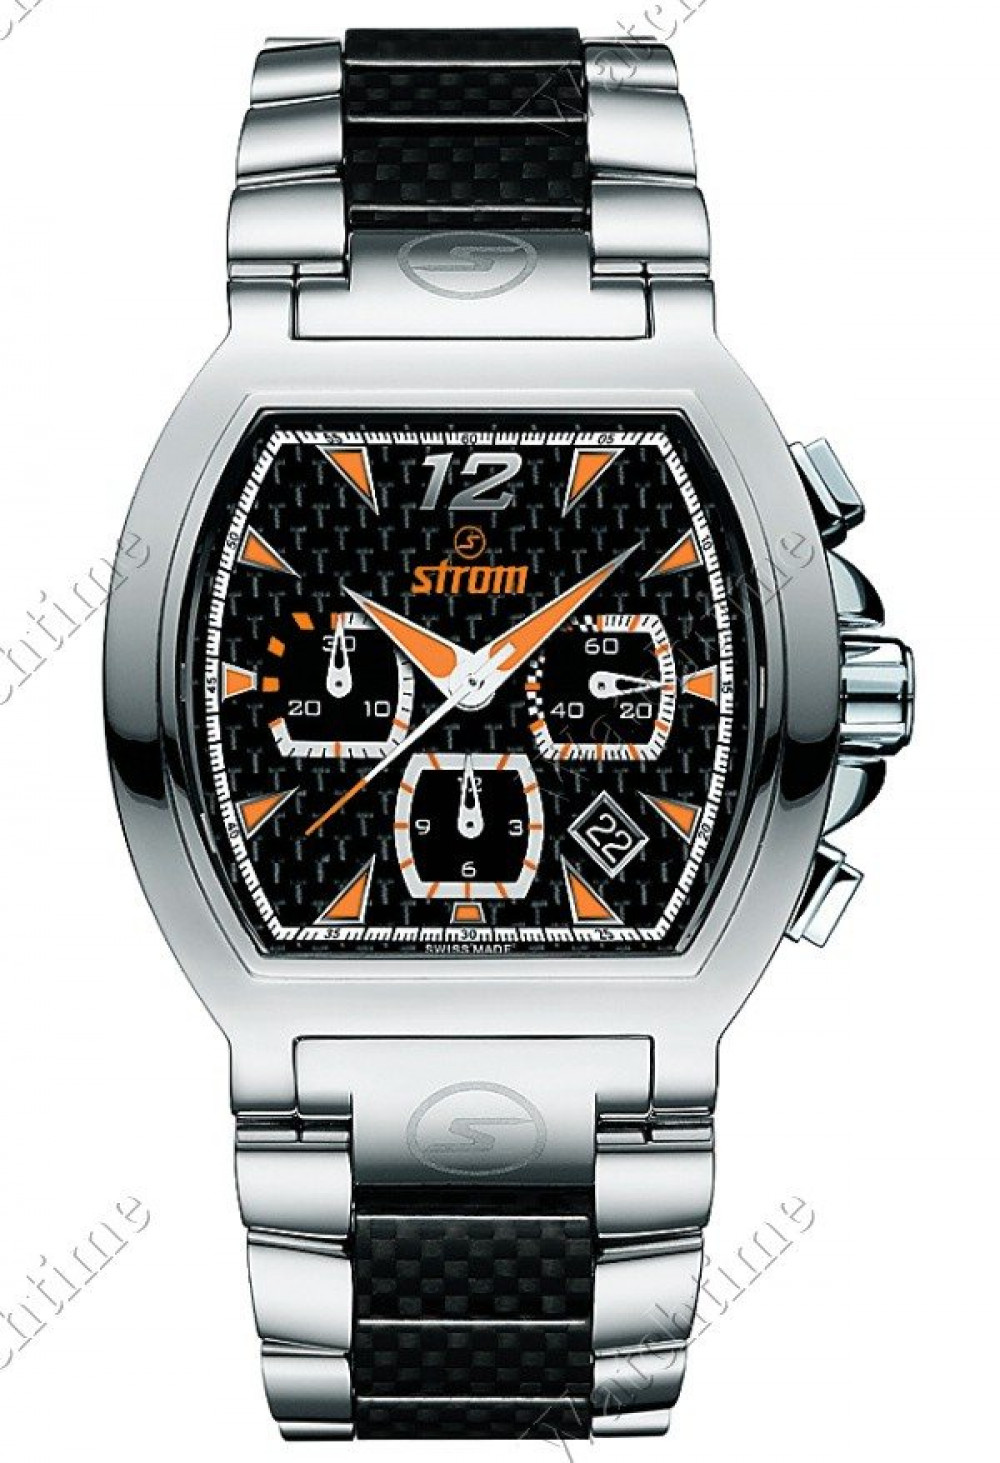 Zegarek firmy Strom, model Big Cruizer Mech Chrono